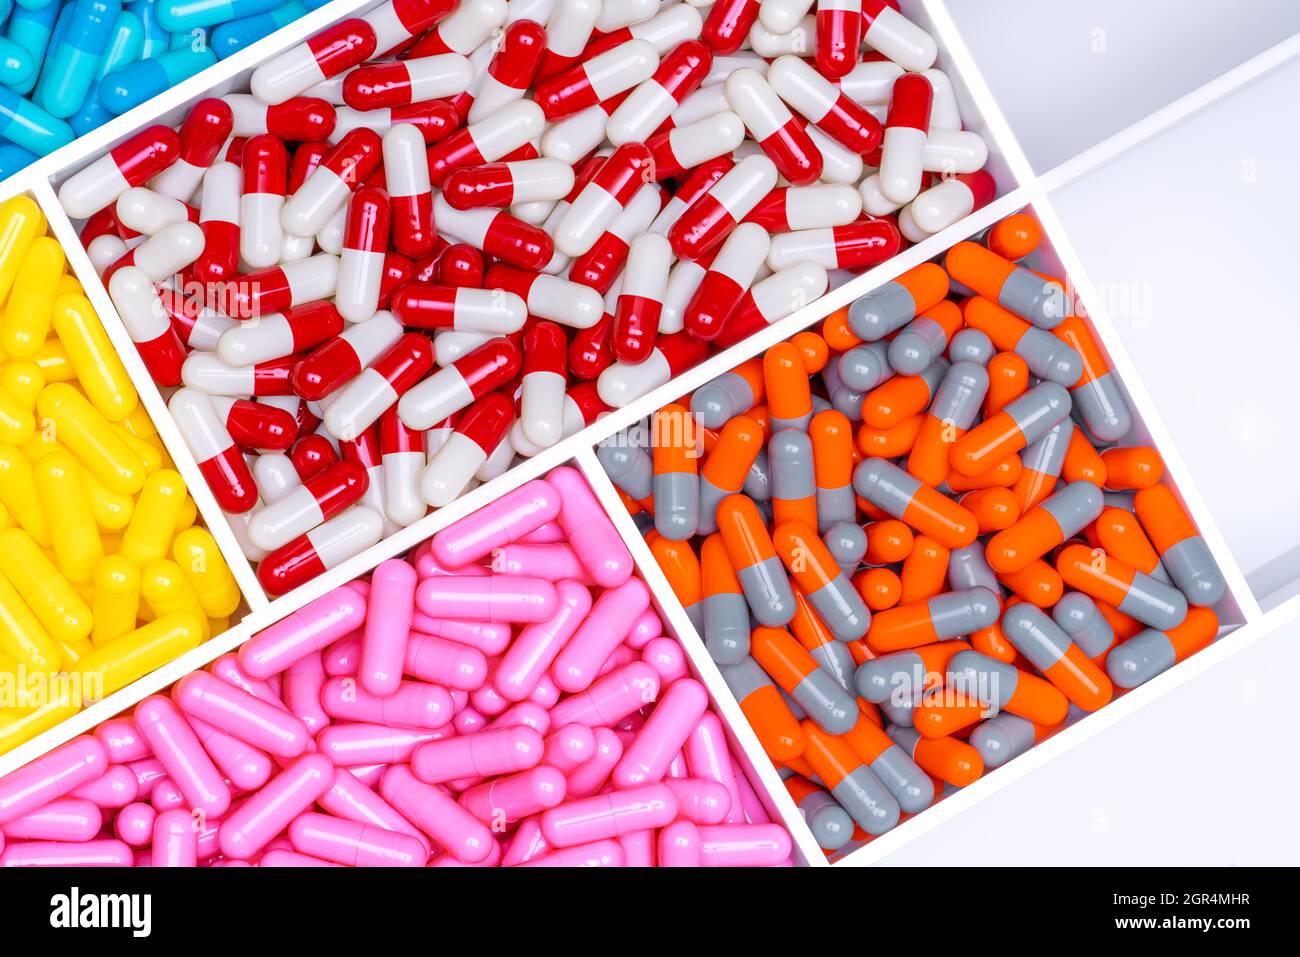 Vista superior de las píldoras de la cápsula antibiótica en la bandeja plástica de la droga. Concepto de resistencia a antibióticos. Foto de stock